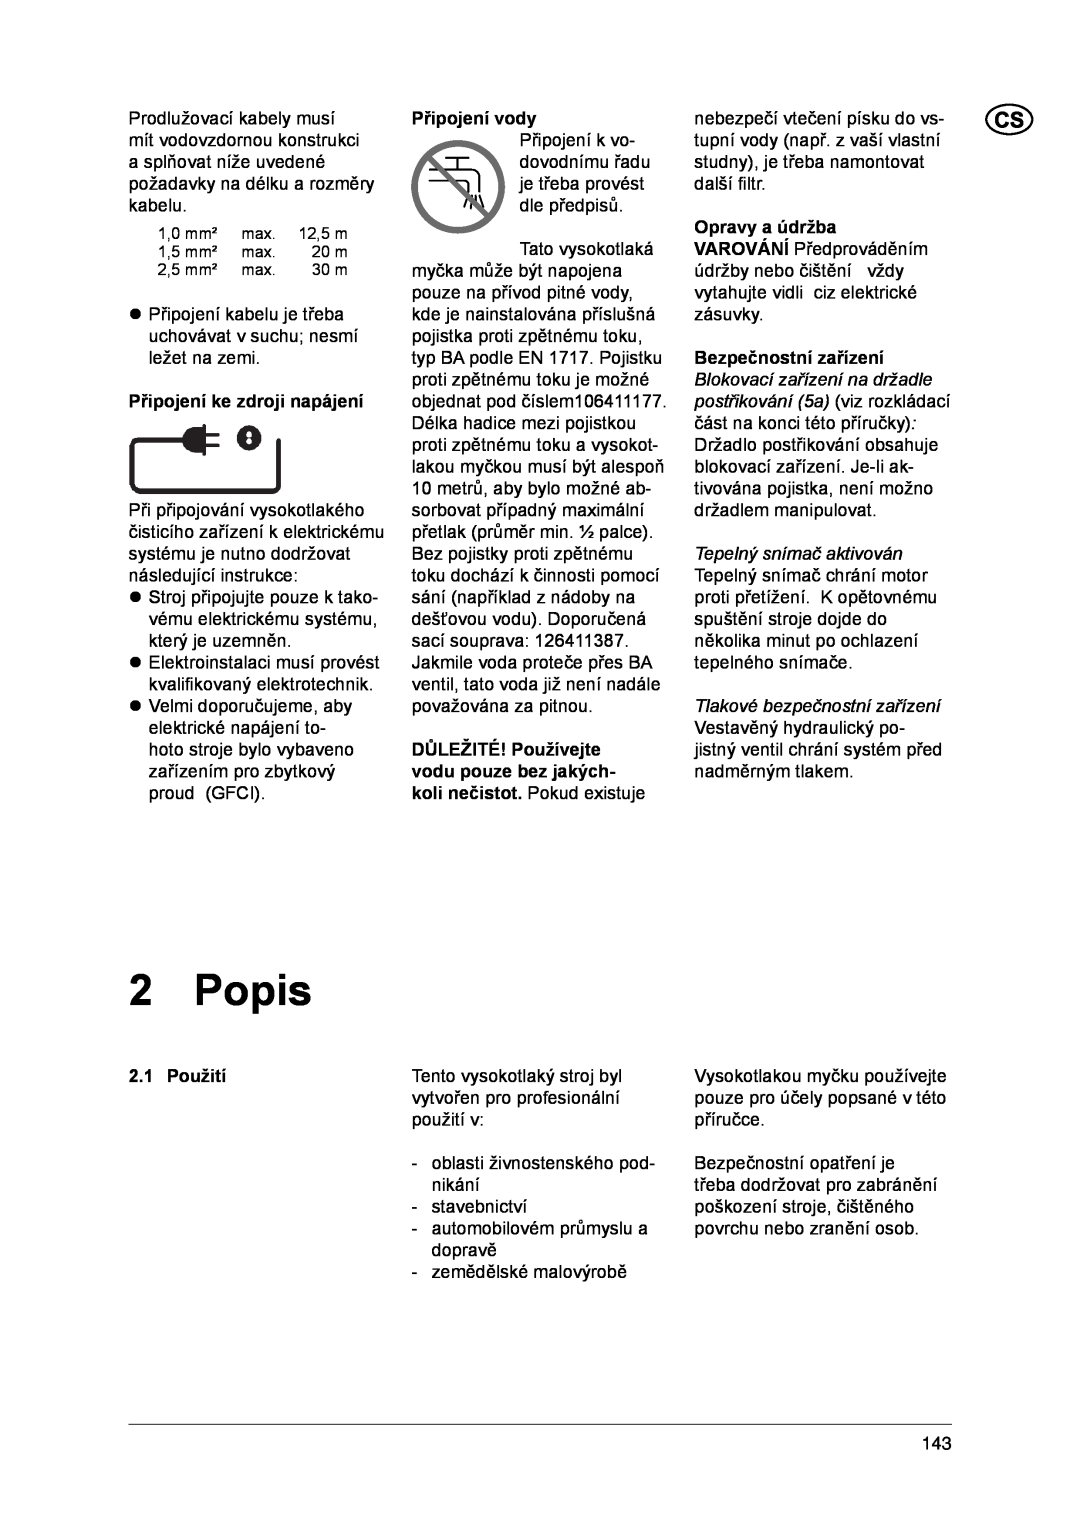 Nilfisk-ALTO 1-20 XT manual Popis, Připojení ke zdroji napájení, Připojení vody Připojení k vo, Použití 